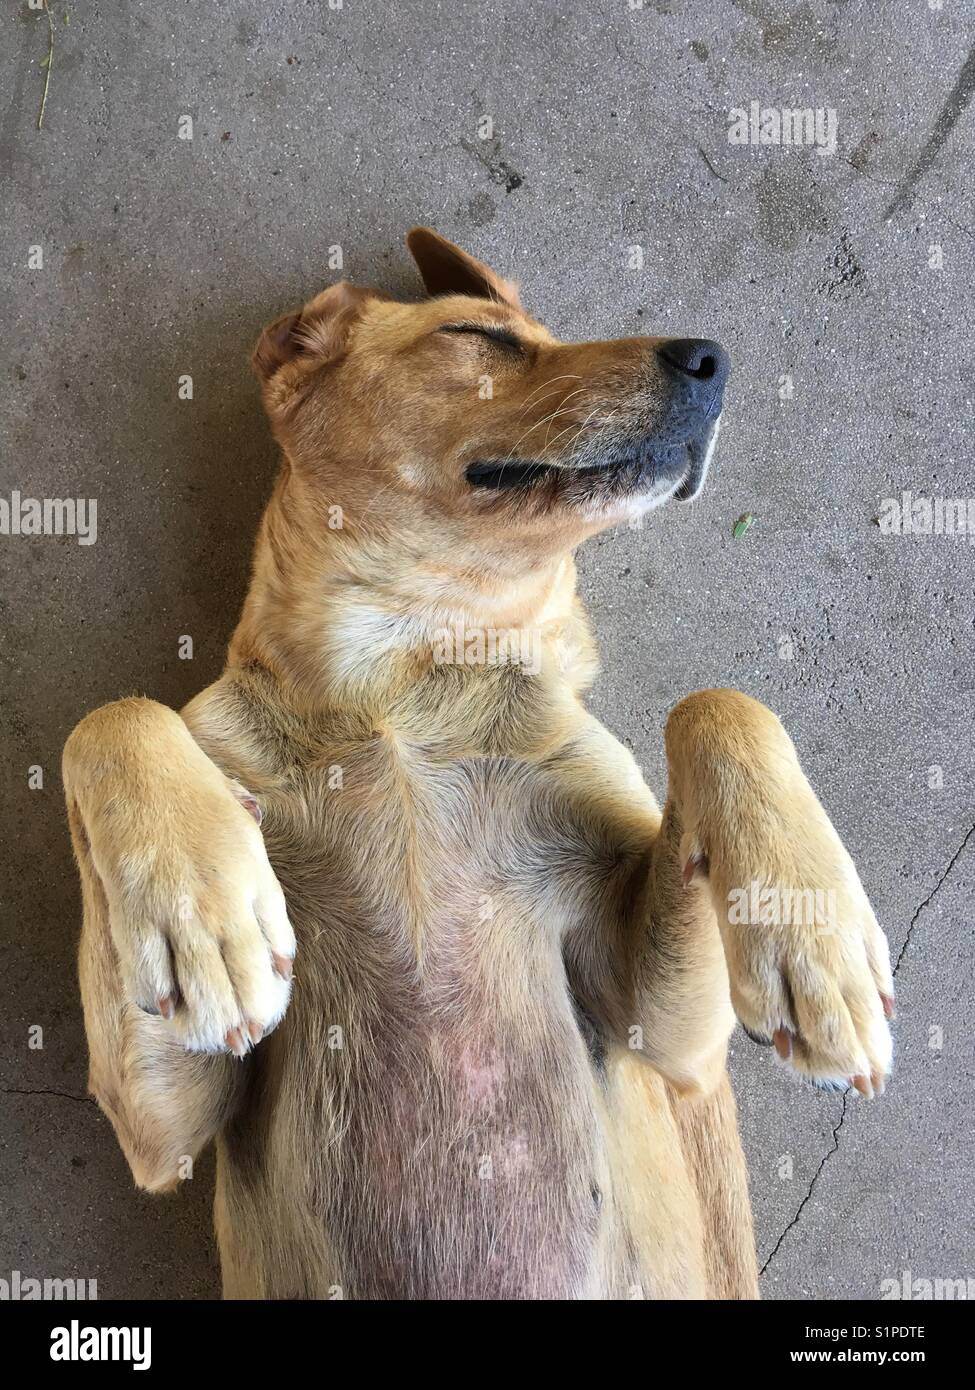 a happy dog Stock Photo